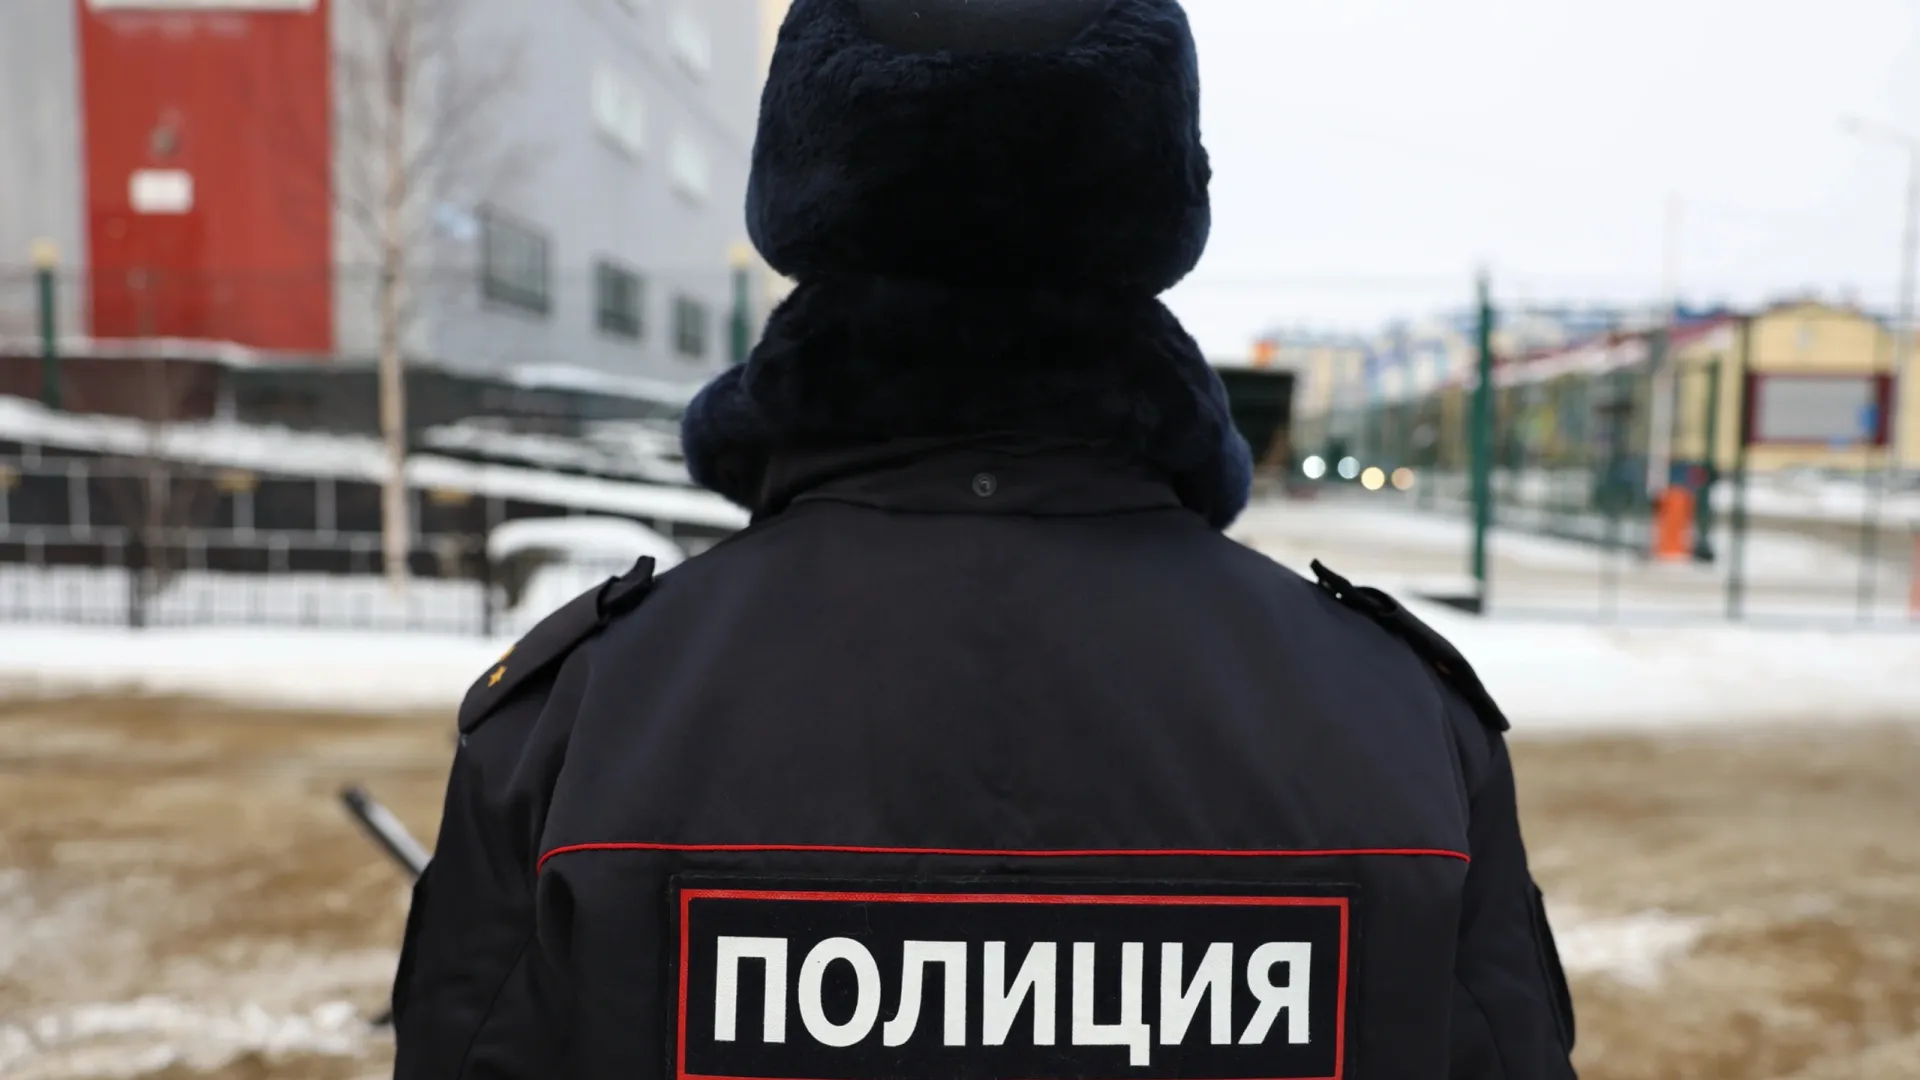 Полицейские проверяли места проживания мигрантов, стройки, общепит и магазины. Фото: Андрей Ткачёв / «Ямал-Медиа»